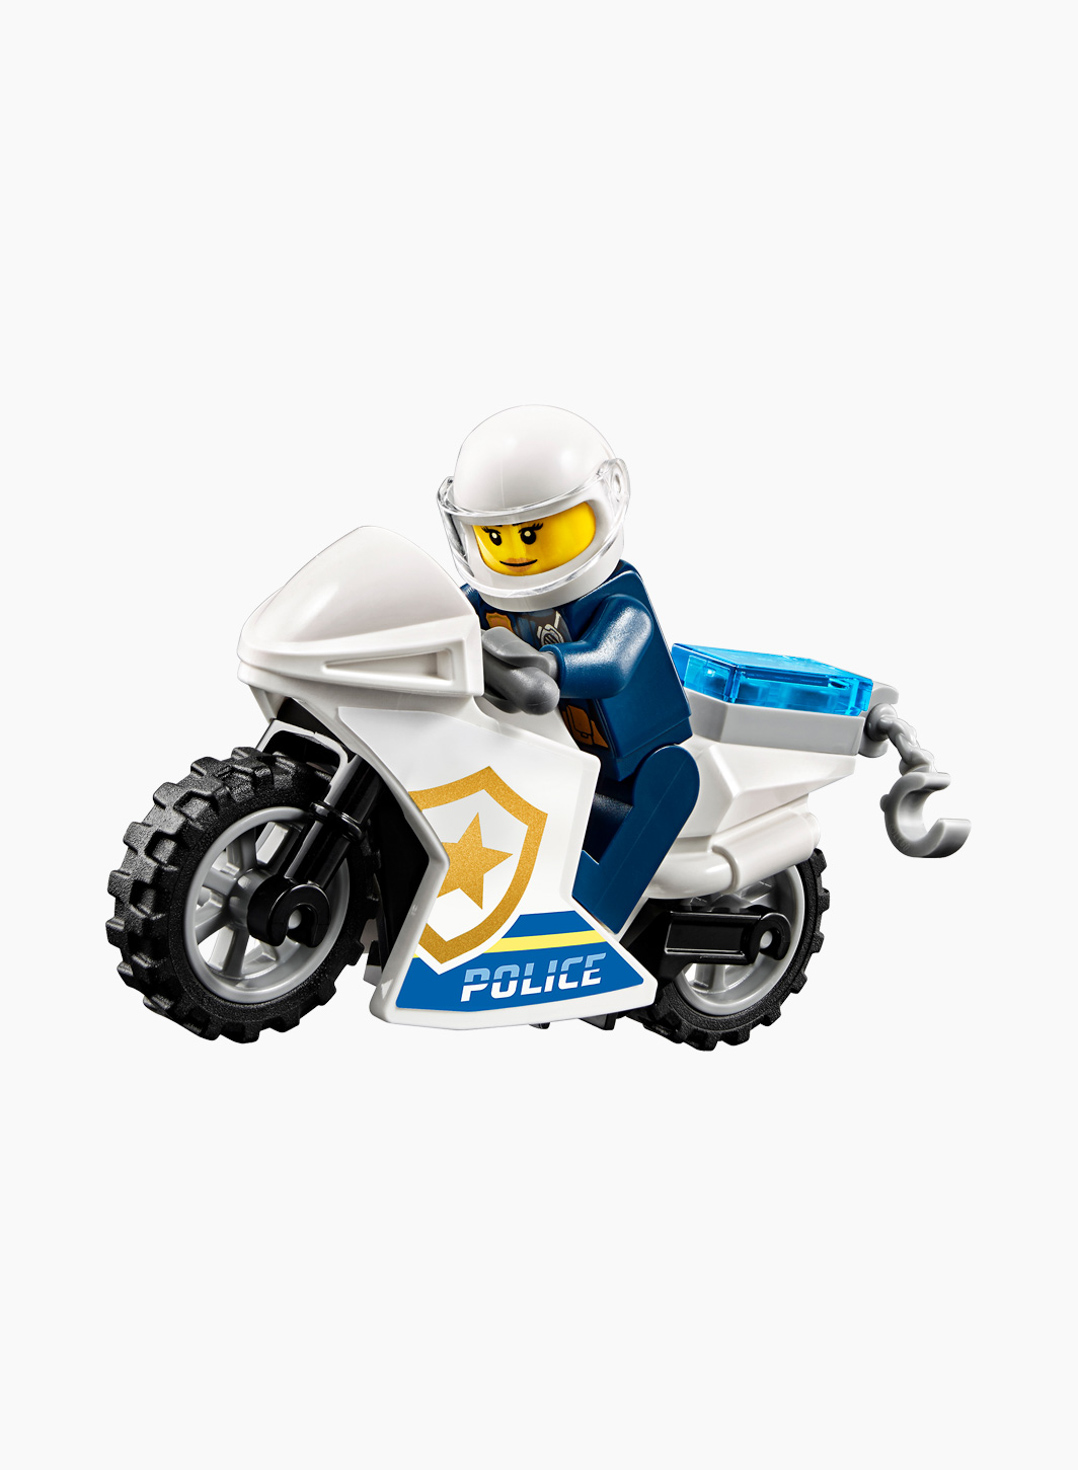 Lego City Կառուցողական Խաղ «Ոստիկանական արտաճանապարհային ամենագնացի կողոպուտ»